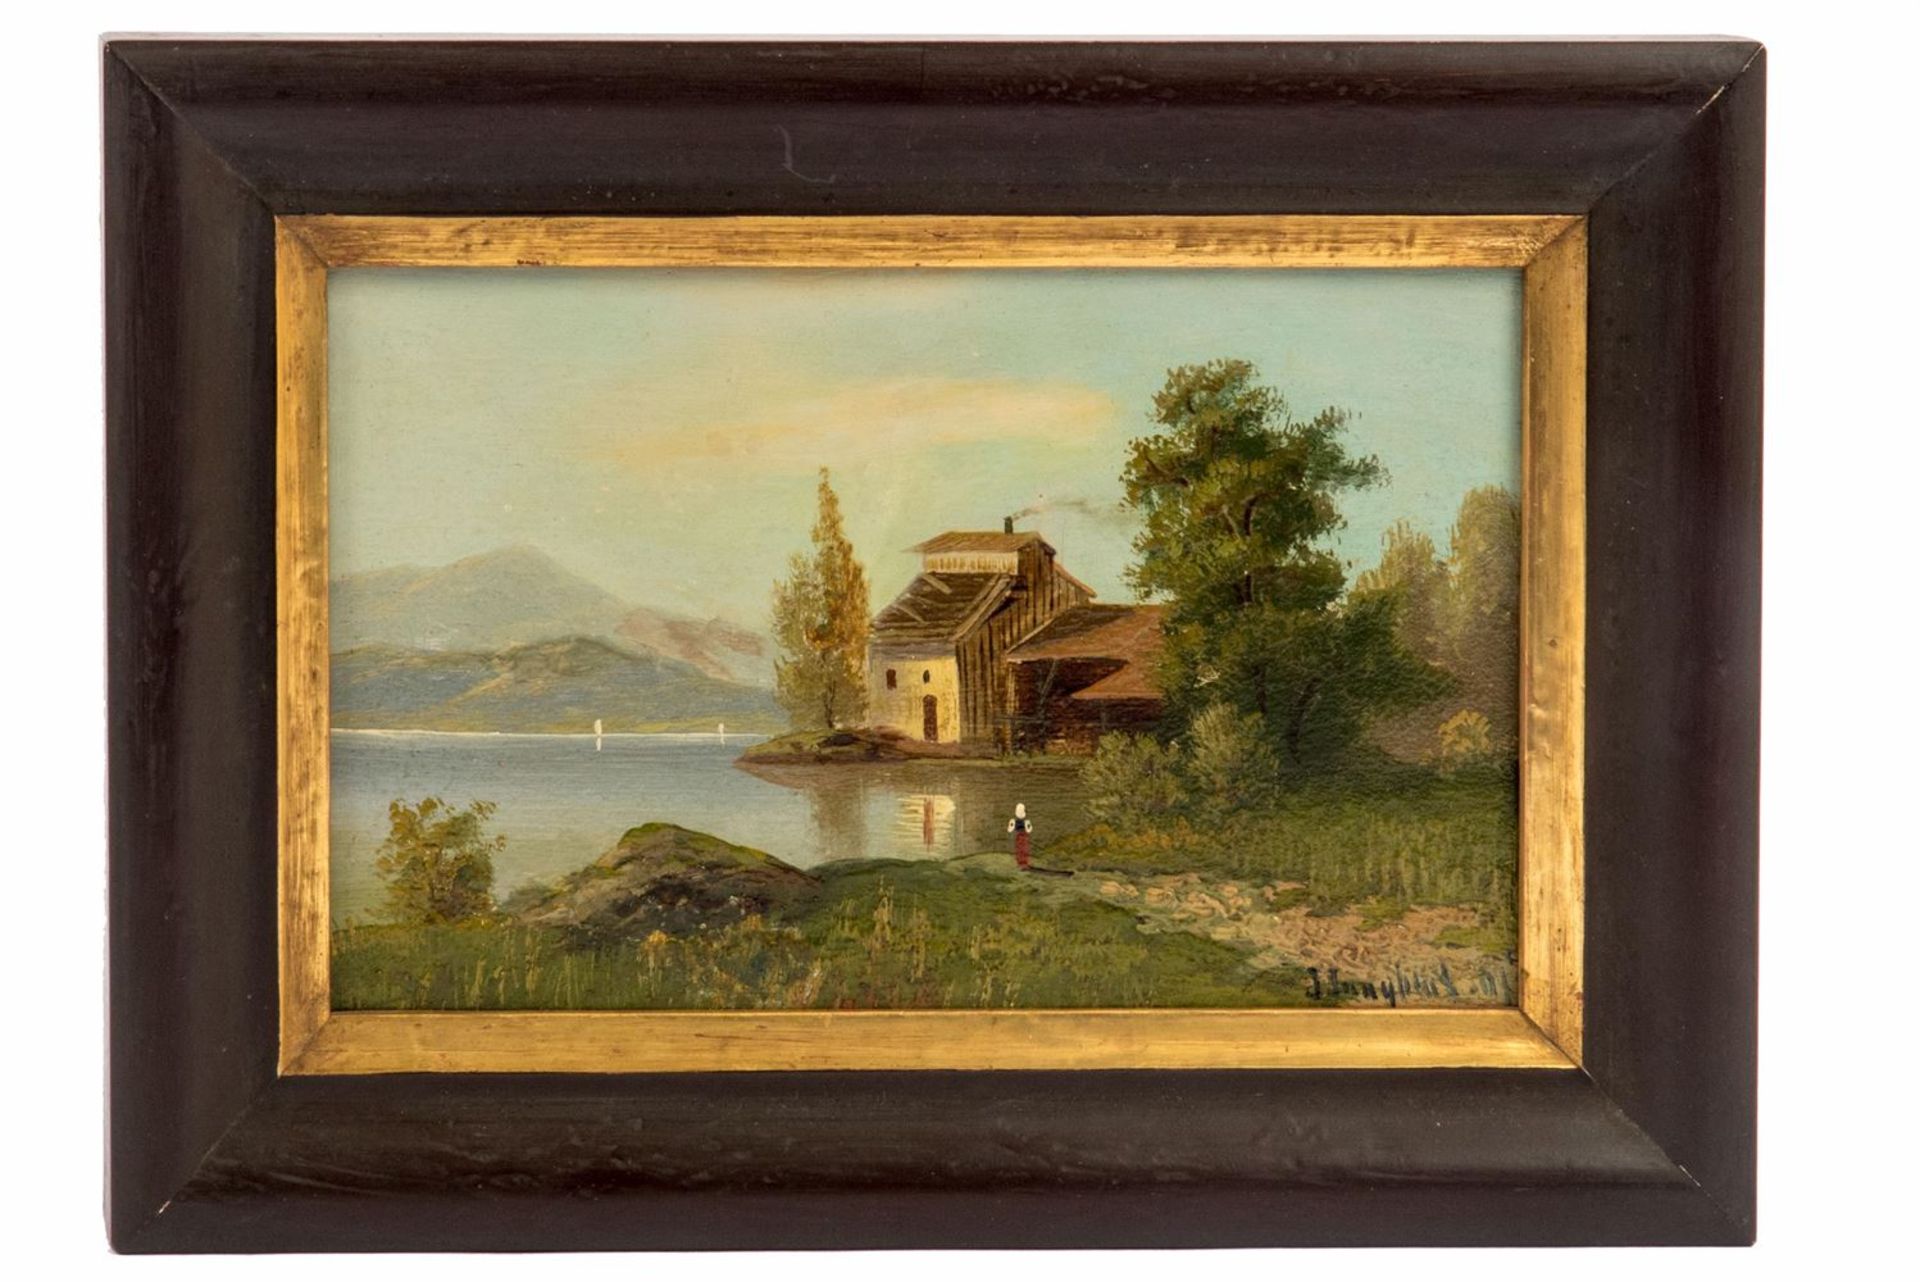 Jungblut, Johann (1860-1912)Oel/Holz. Kleine Binnenseelandschaft mit Anwesen und Staffage. Unten